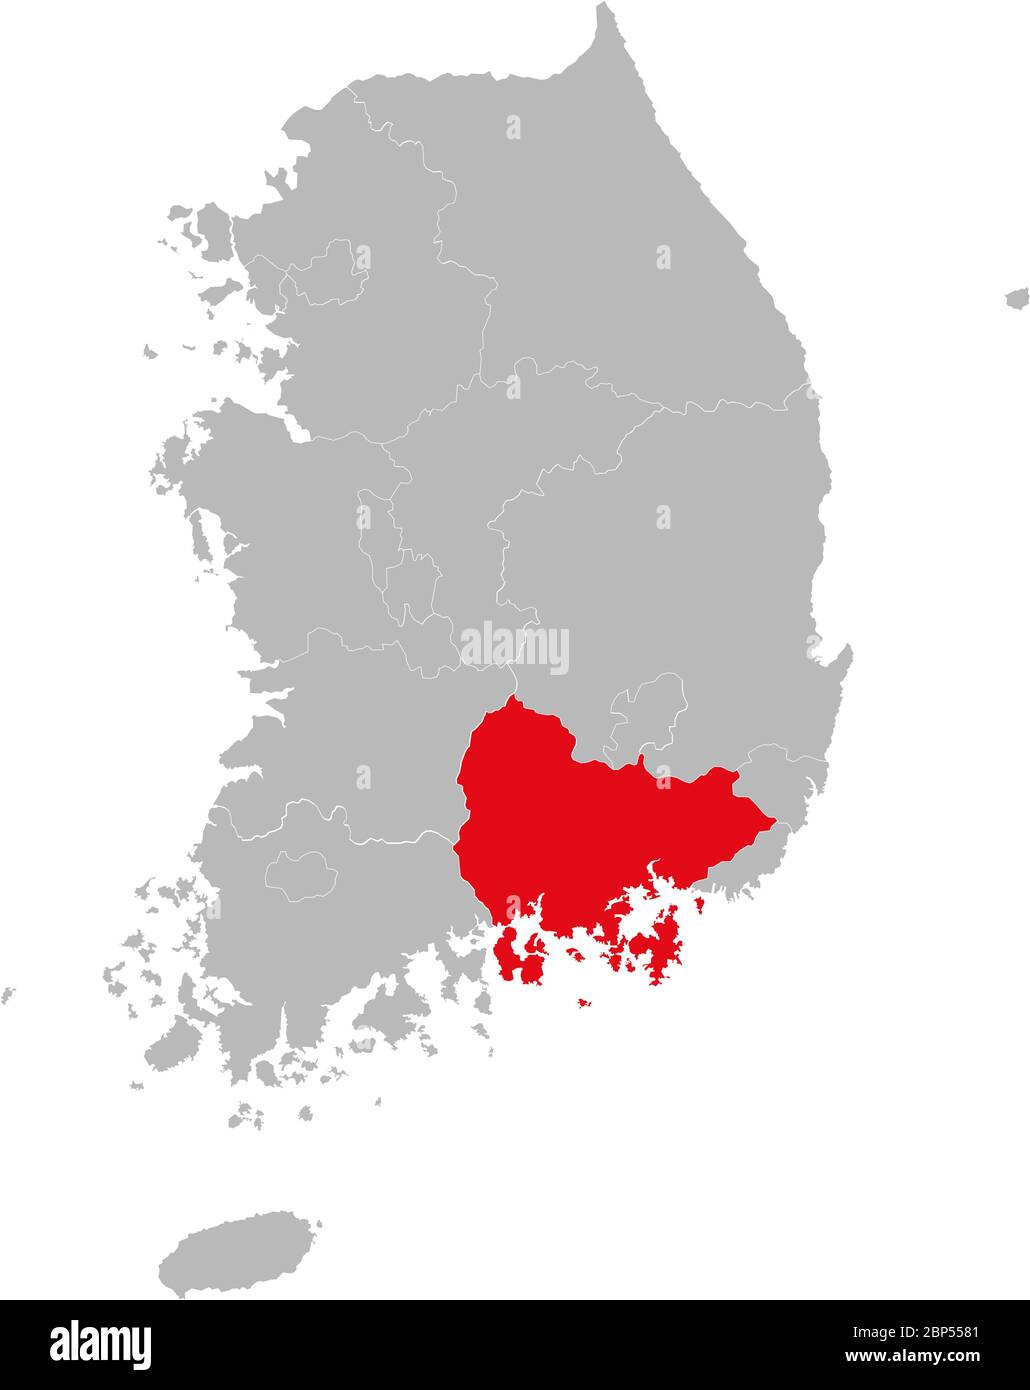 Province de South gyeongsang mise en évidence sur la carte de la corée du Sud. Concepts et antécédents professionnels. Illustration de Vecteur